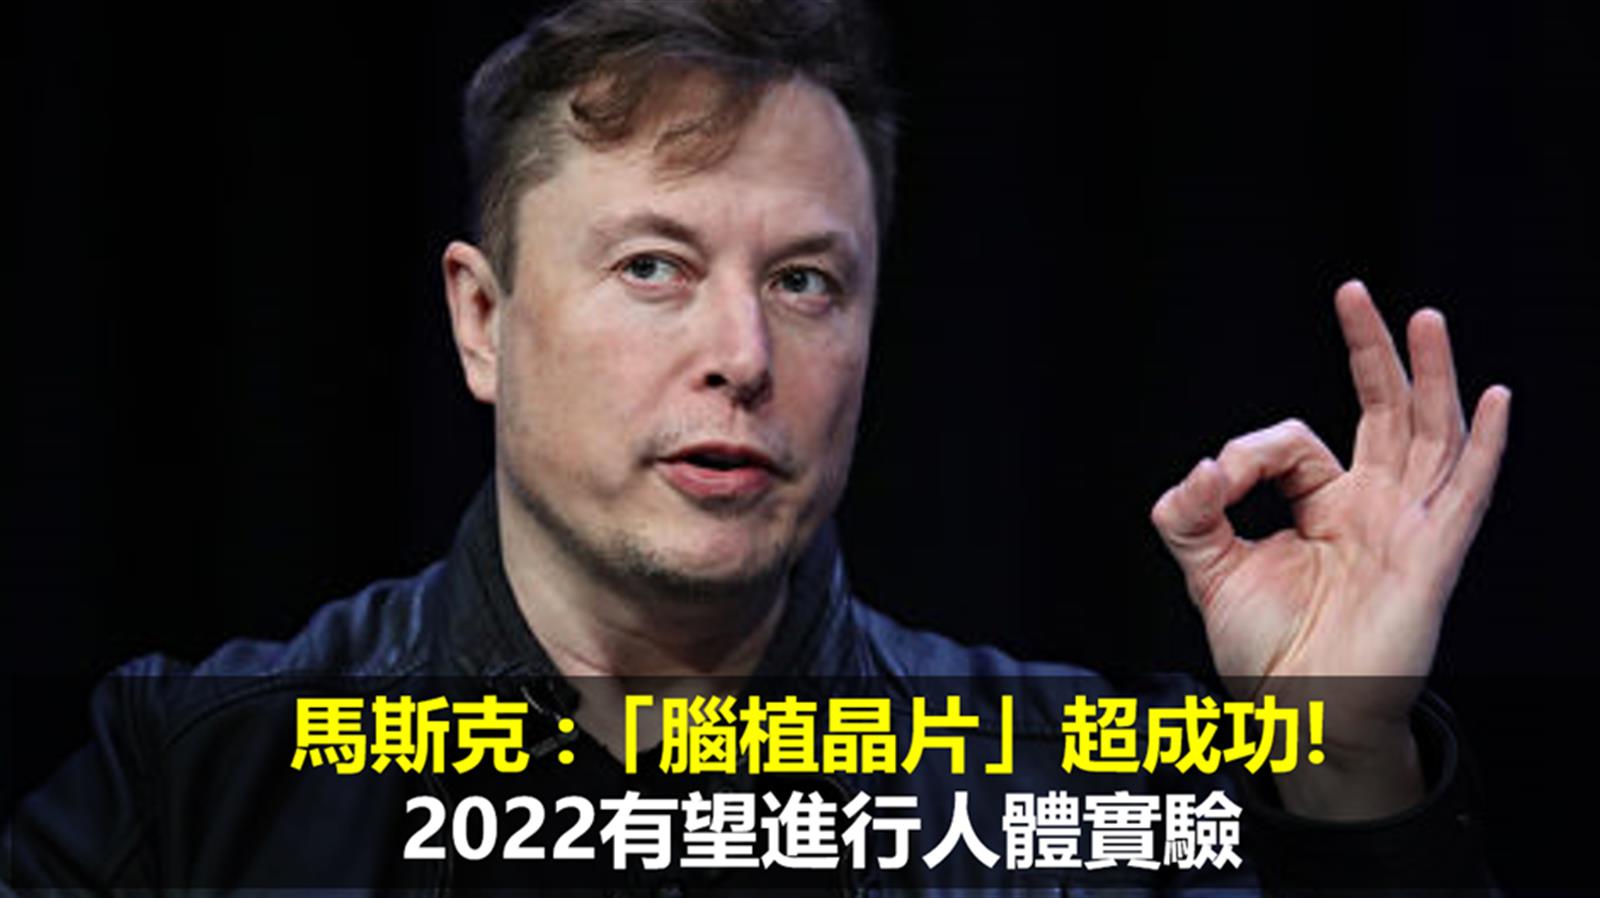 馬斯克 :「腦植晶片」超成功!  2022有望進行人體實驗